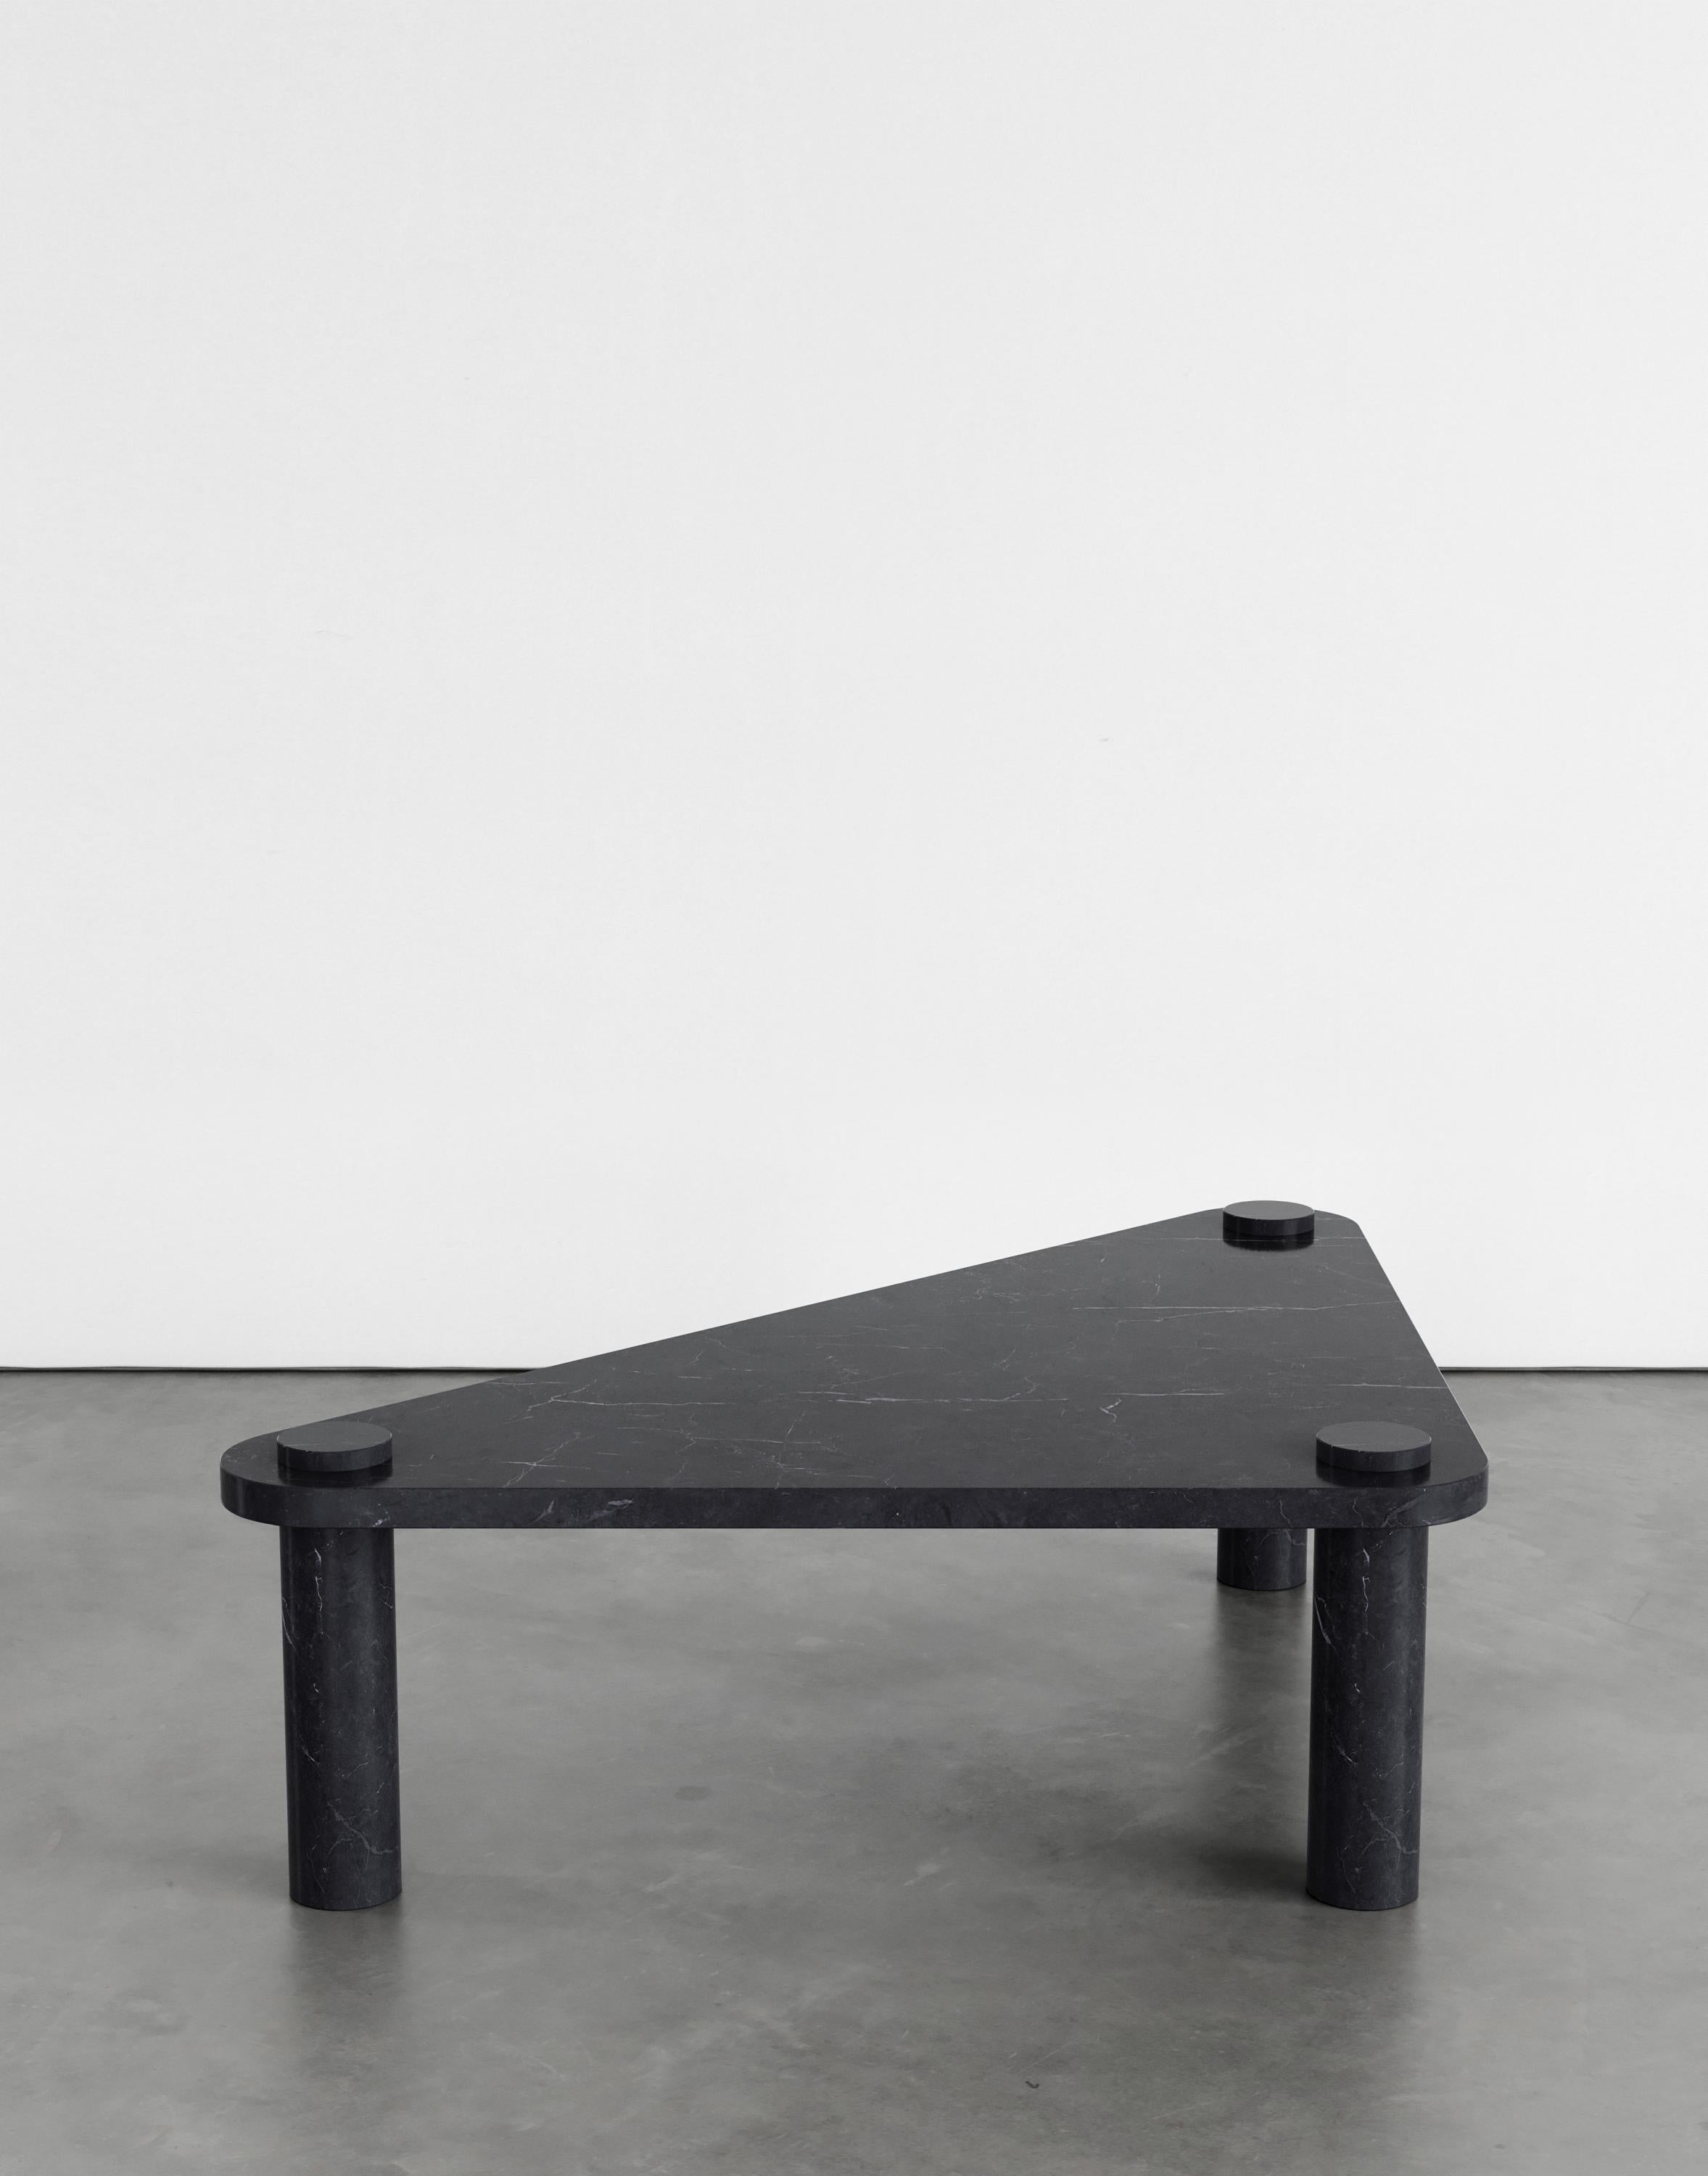 Table basse Simone 120 par Agglomerati 
Dimensions : D 100 x L 100 x H 36 cm 
Matériaux : Marquina noir. Disponible dans d'autres variétés de marbre.

Agglomerati est un studio basé à Londres qui collabore avec des artistes multidisciplinaires pour